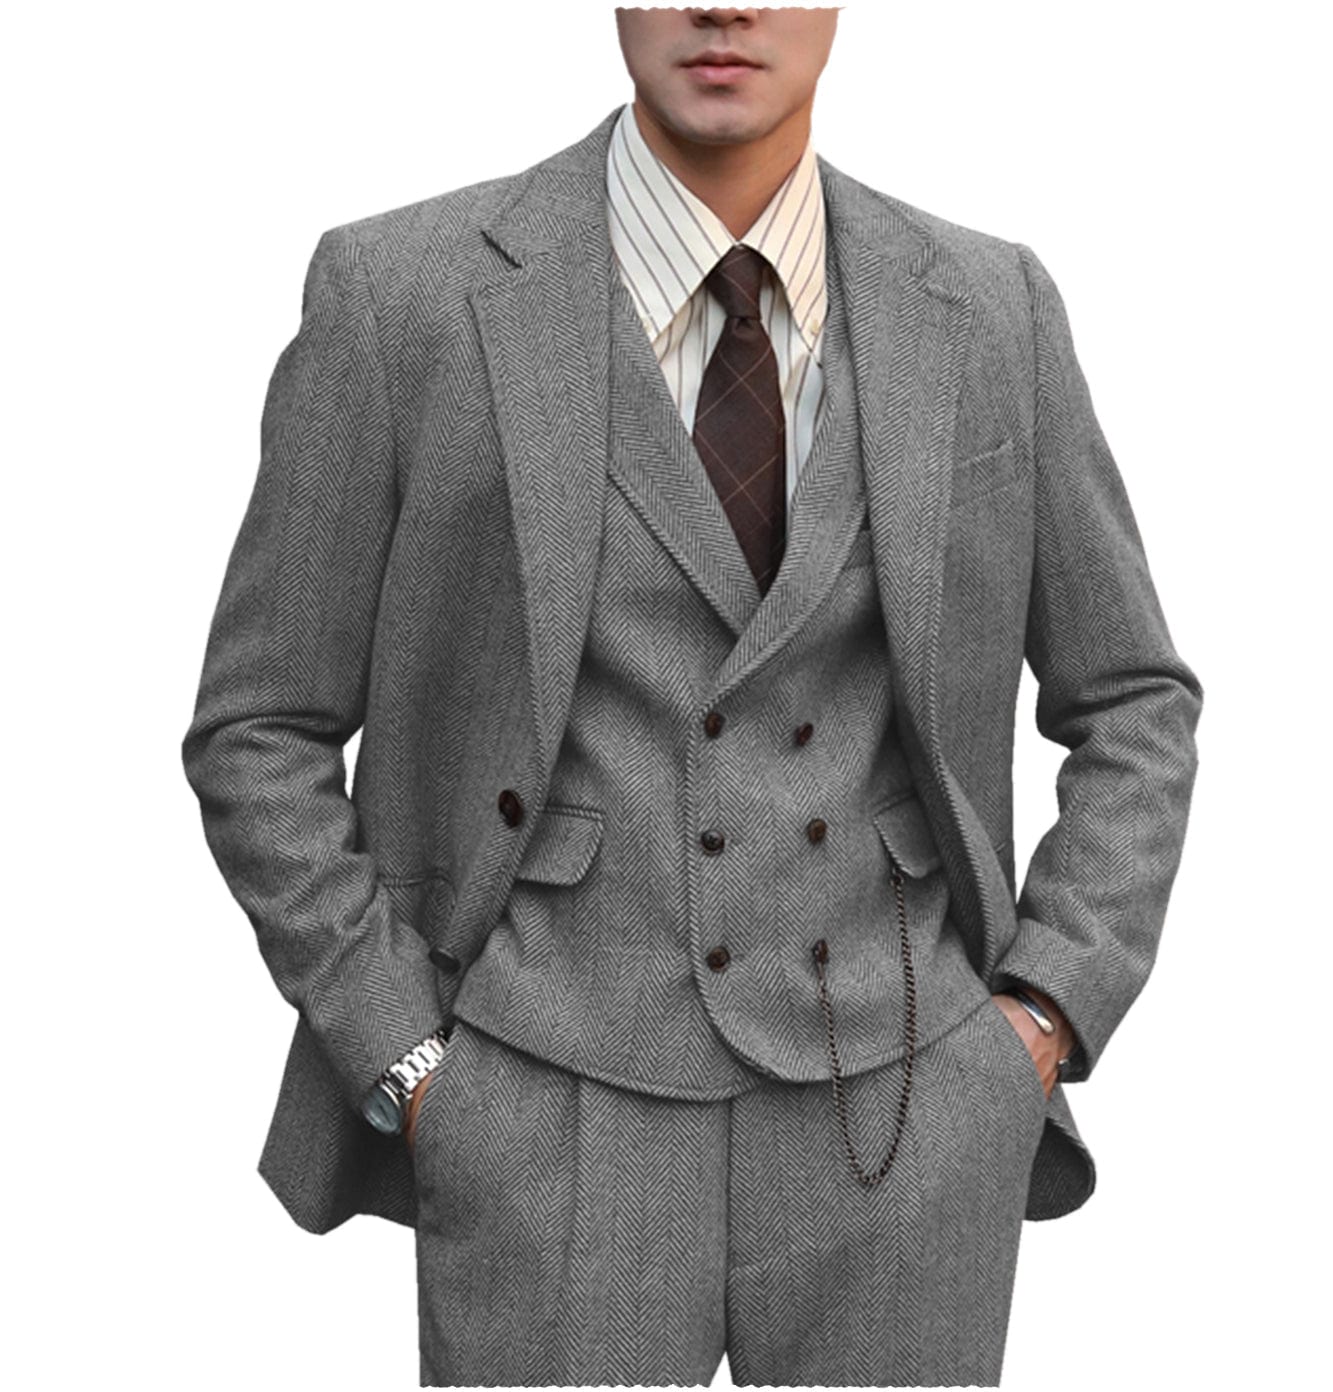 ceehuteey men’s classical herringbone suits 3 piece suits  regular fit wedding groom suits (blazer+vest+pants)